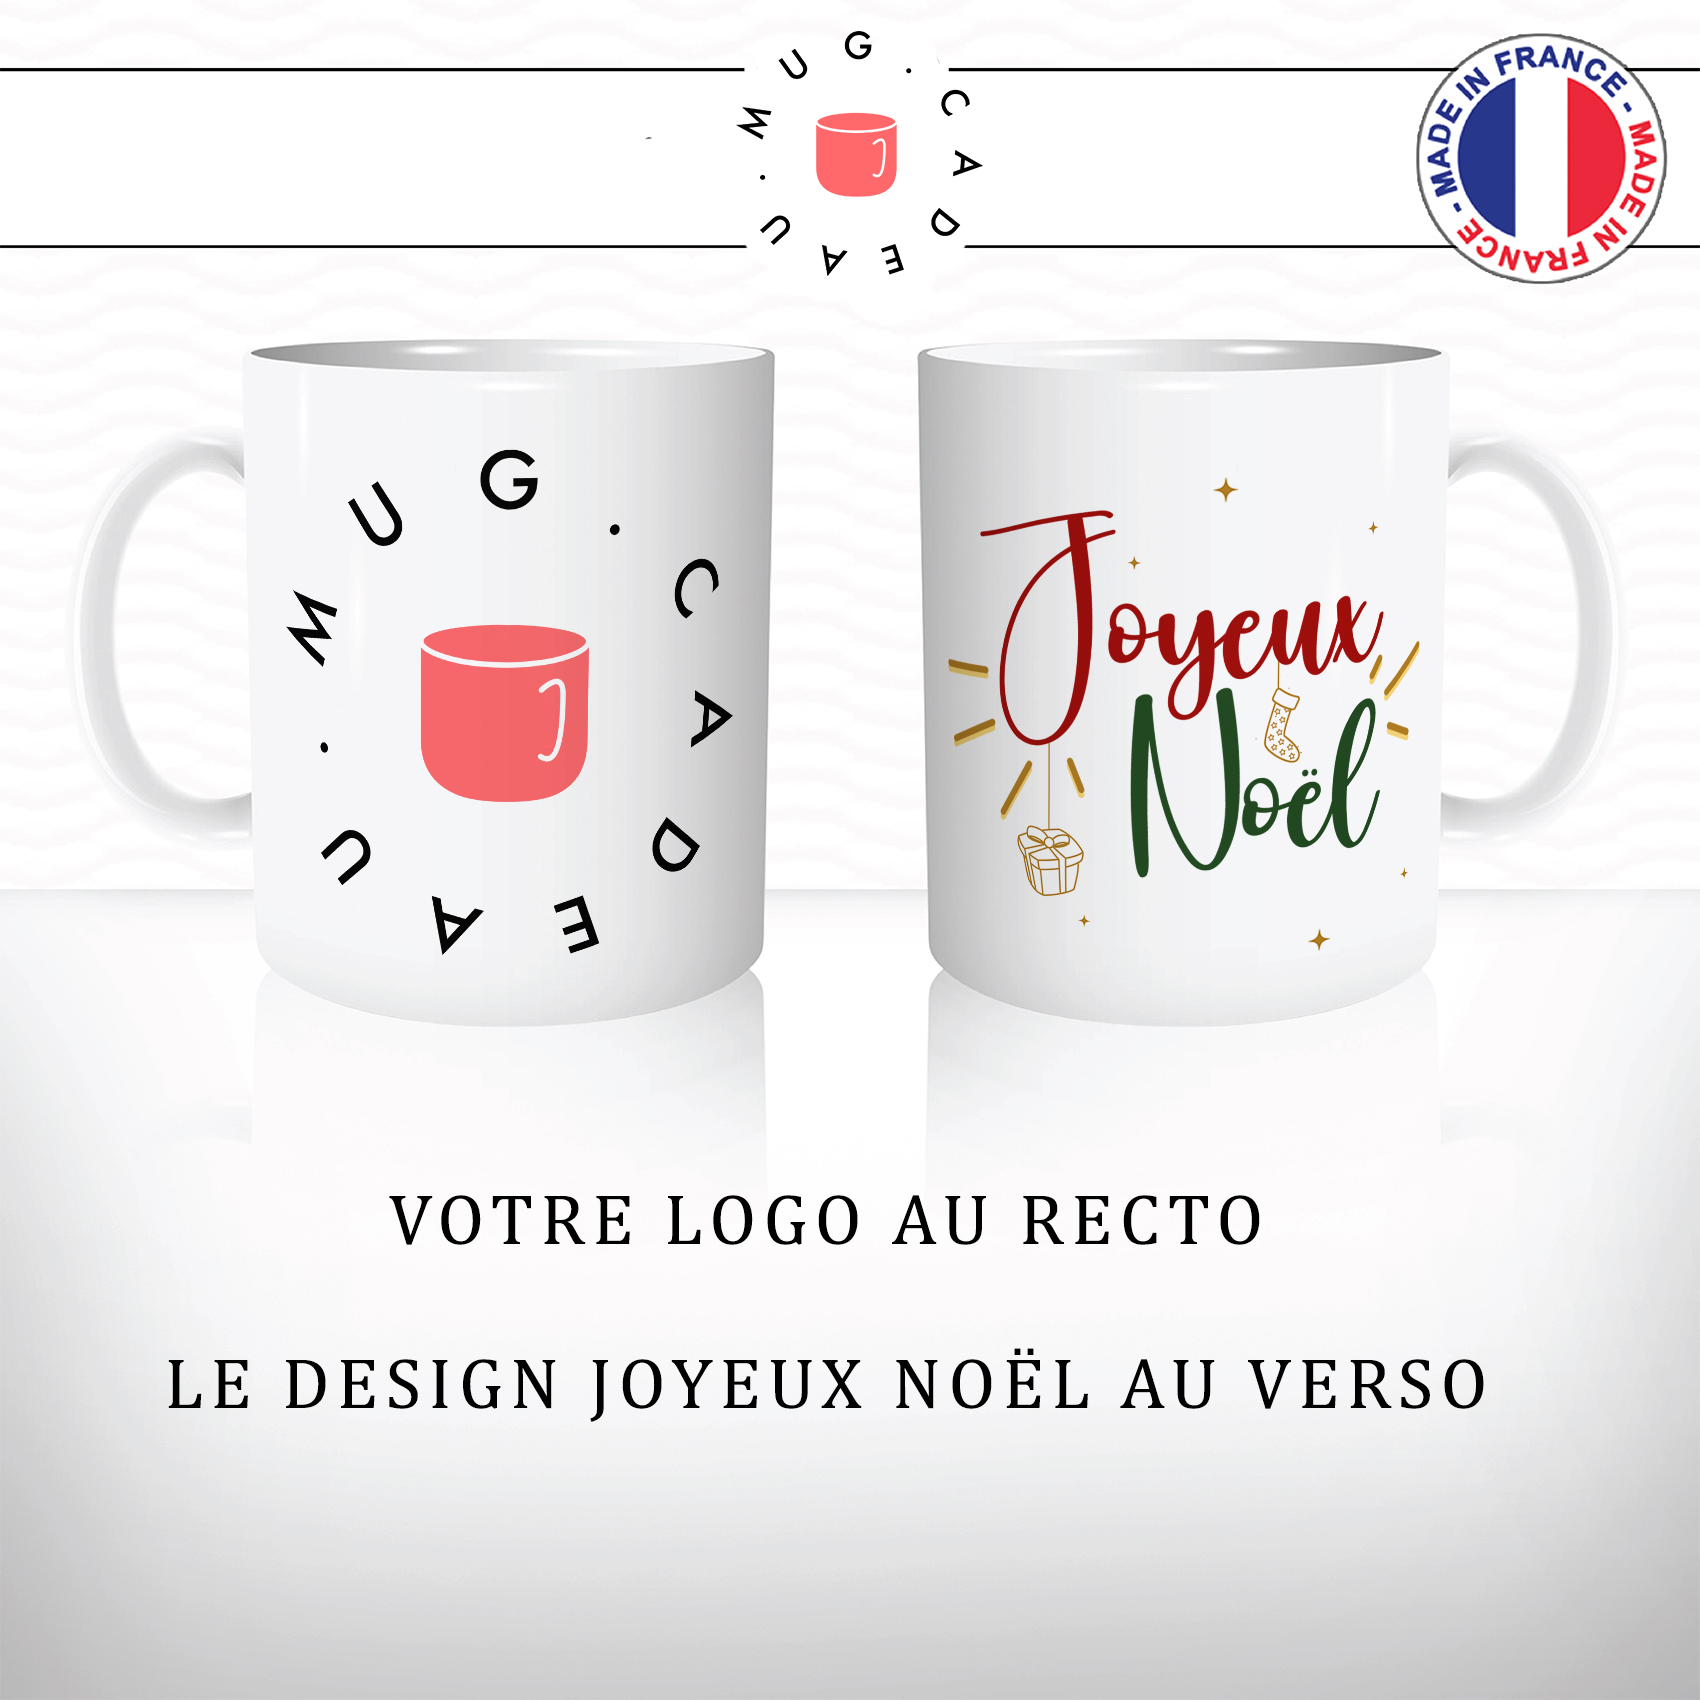 mug-tasse-goodies-logo-entreprise-contact-cadeau-clients-joyeux-noel-cadeaux-fin-d'année-relation-client-logos-personnalisés-société-vente-grossiste-noel-goodie-8